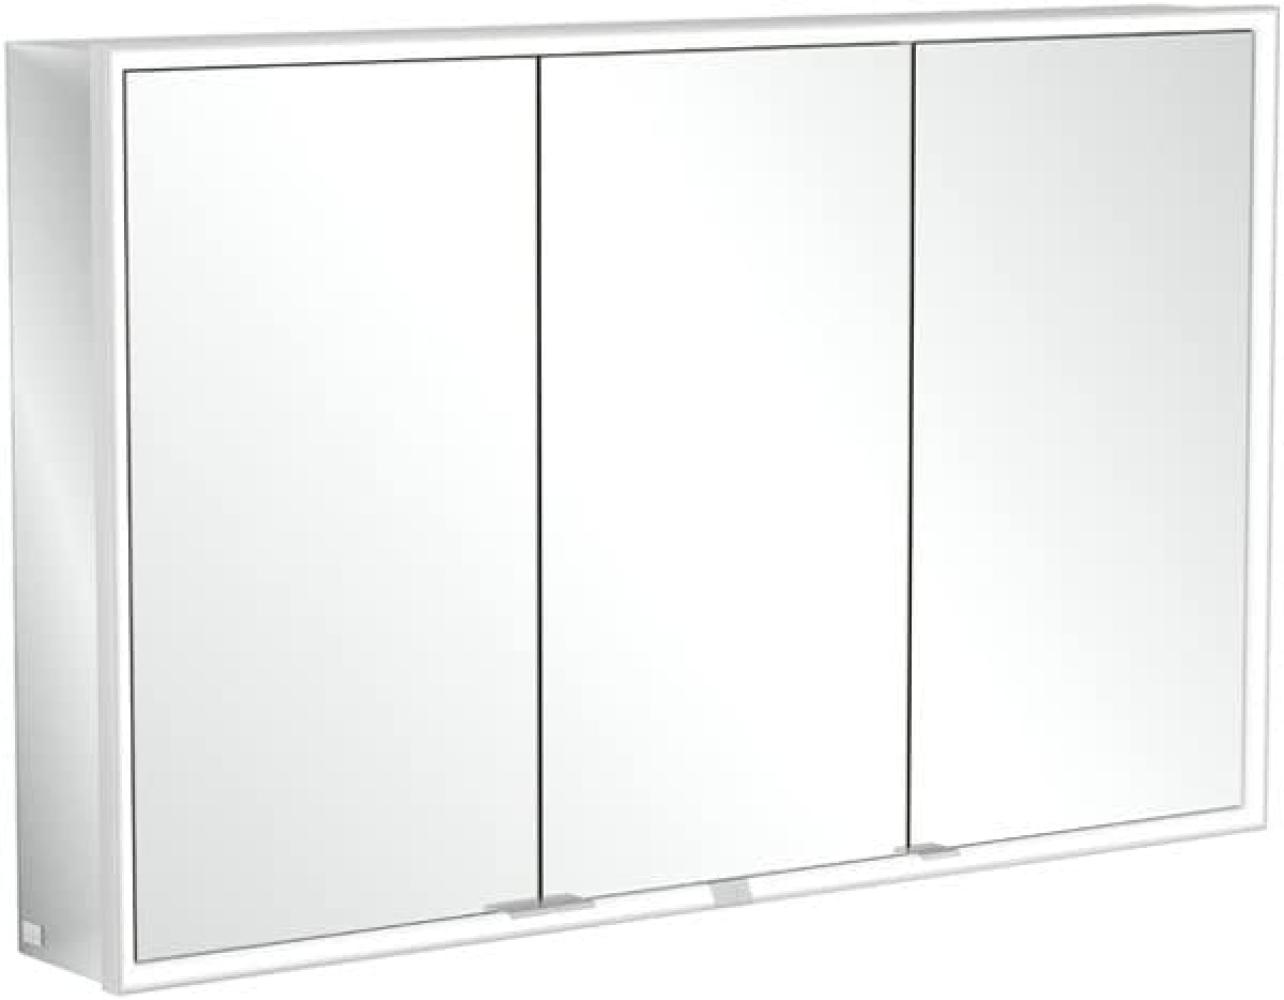 Villeroy & Boch My View Now, Spiegelschrank für Aufputz mit Beleuchtung, 1200x750x168 mm, mit Ein-/Ausschalter, Smart Home fähig, 3 Türen, A45712 - A4571200 Bild 1